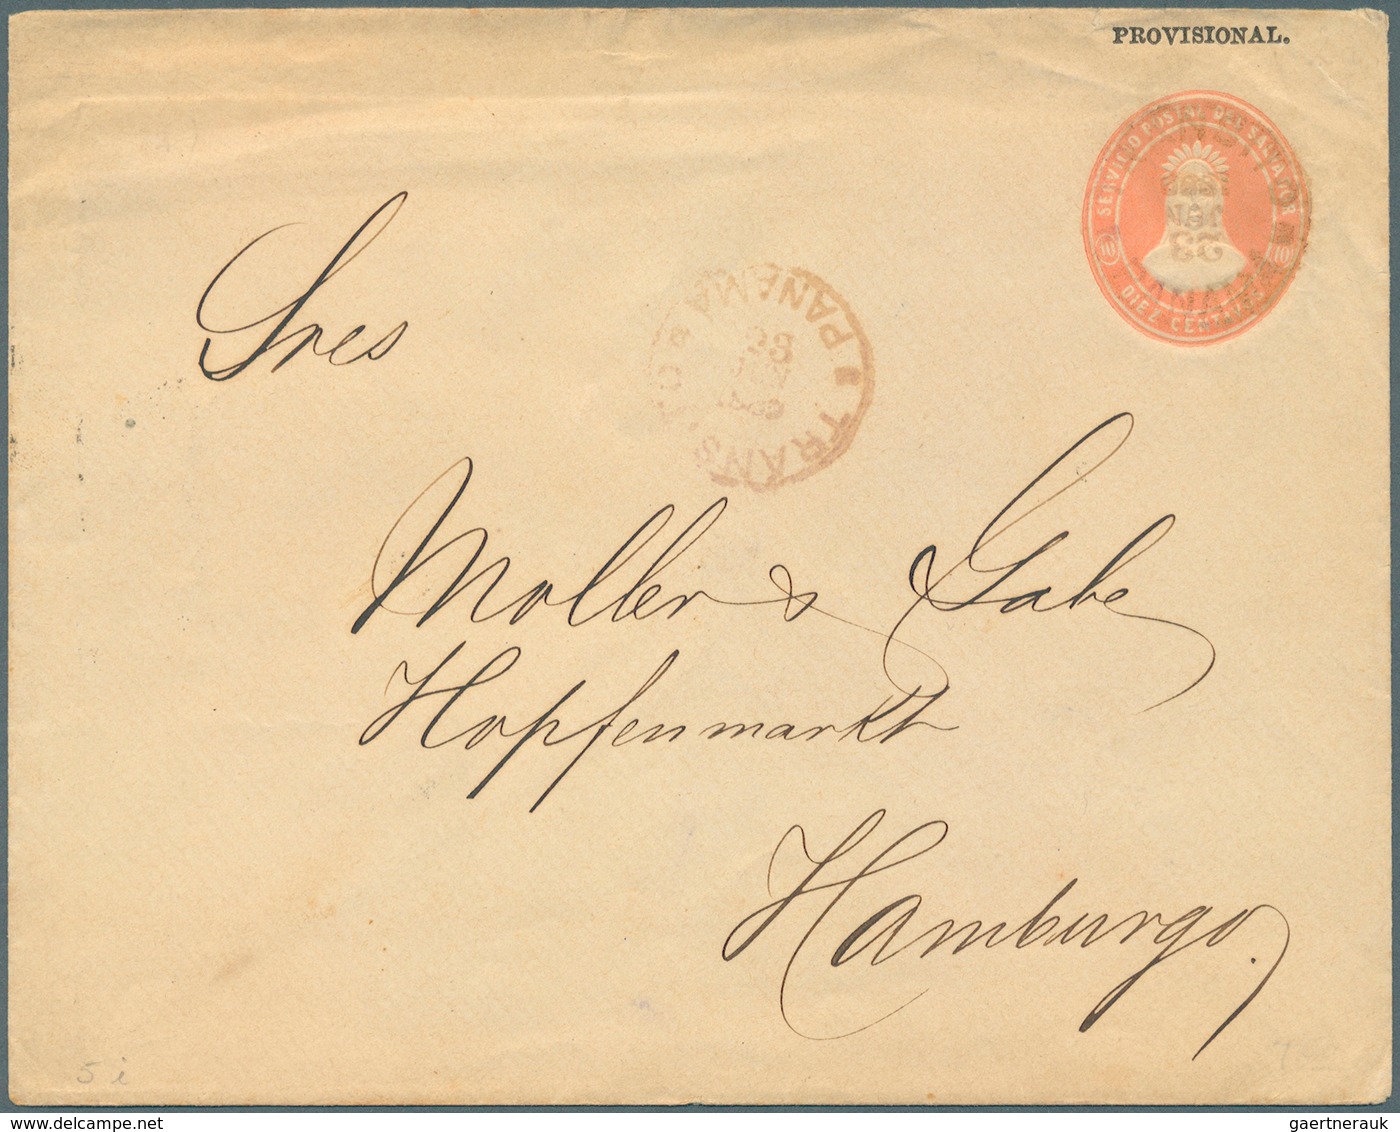 El Salvador - Ganzsachen: 1889, Stationery Envelope 10 C Rose "PROVISIONAL" Sent From "LA LIBERTAD 6 - El Salvador